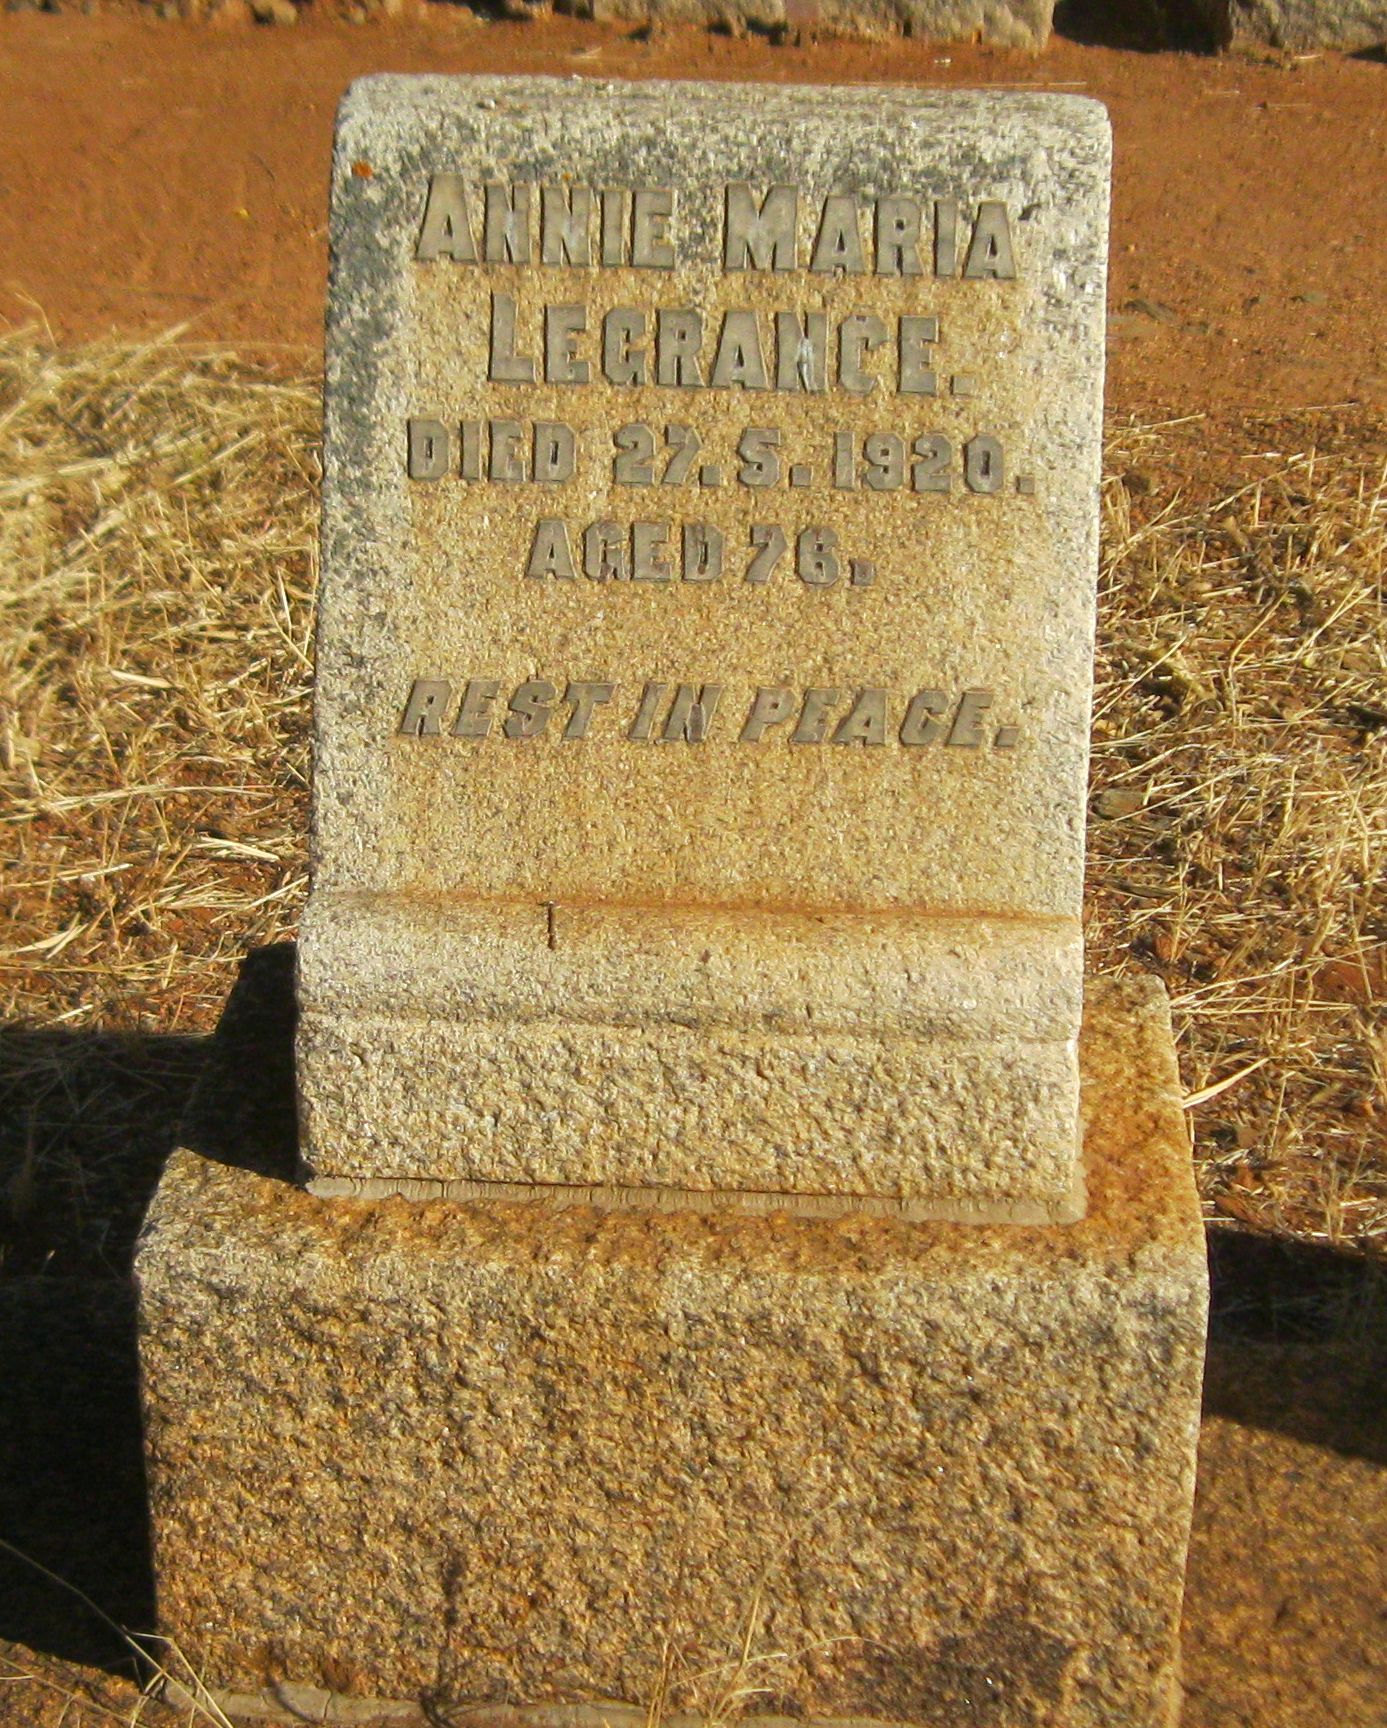 cemeteries_headstone_byo_legrange_1920